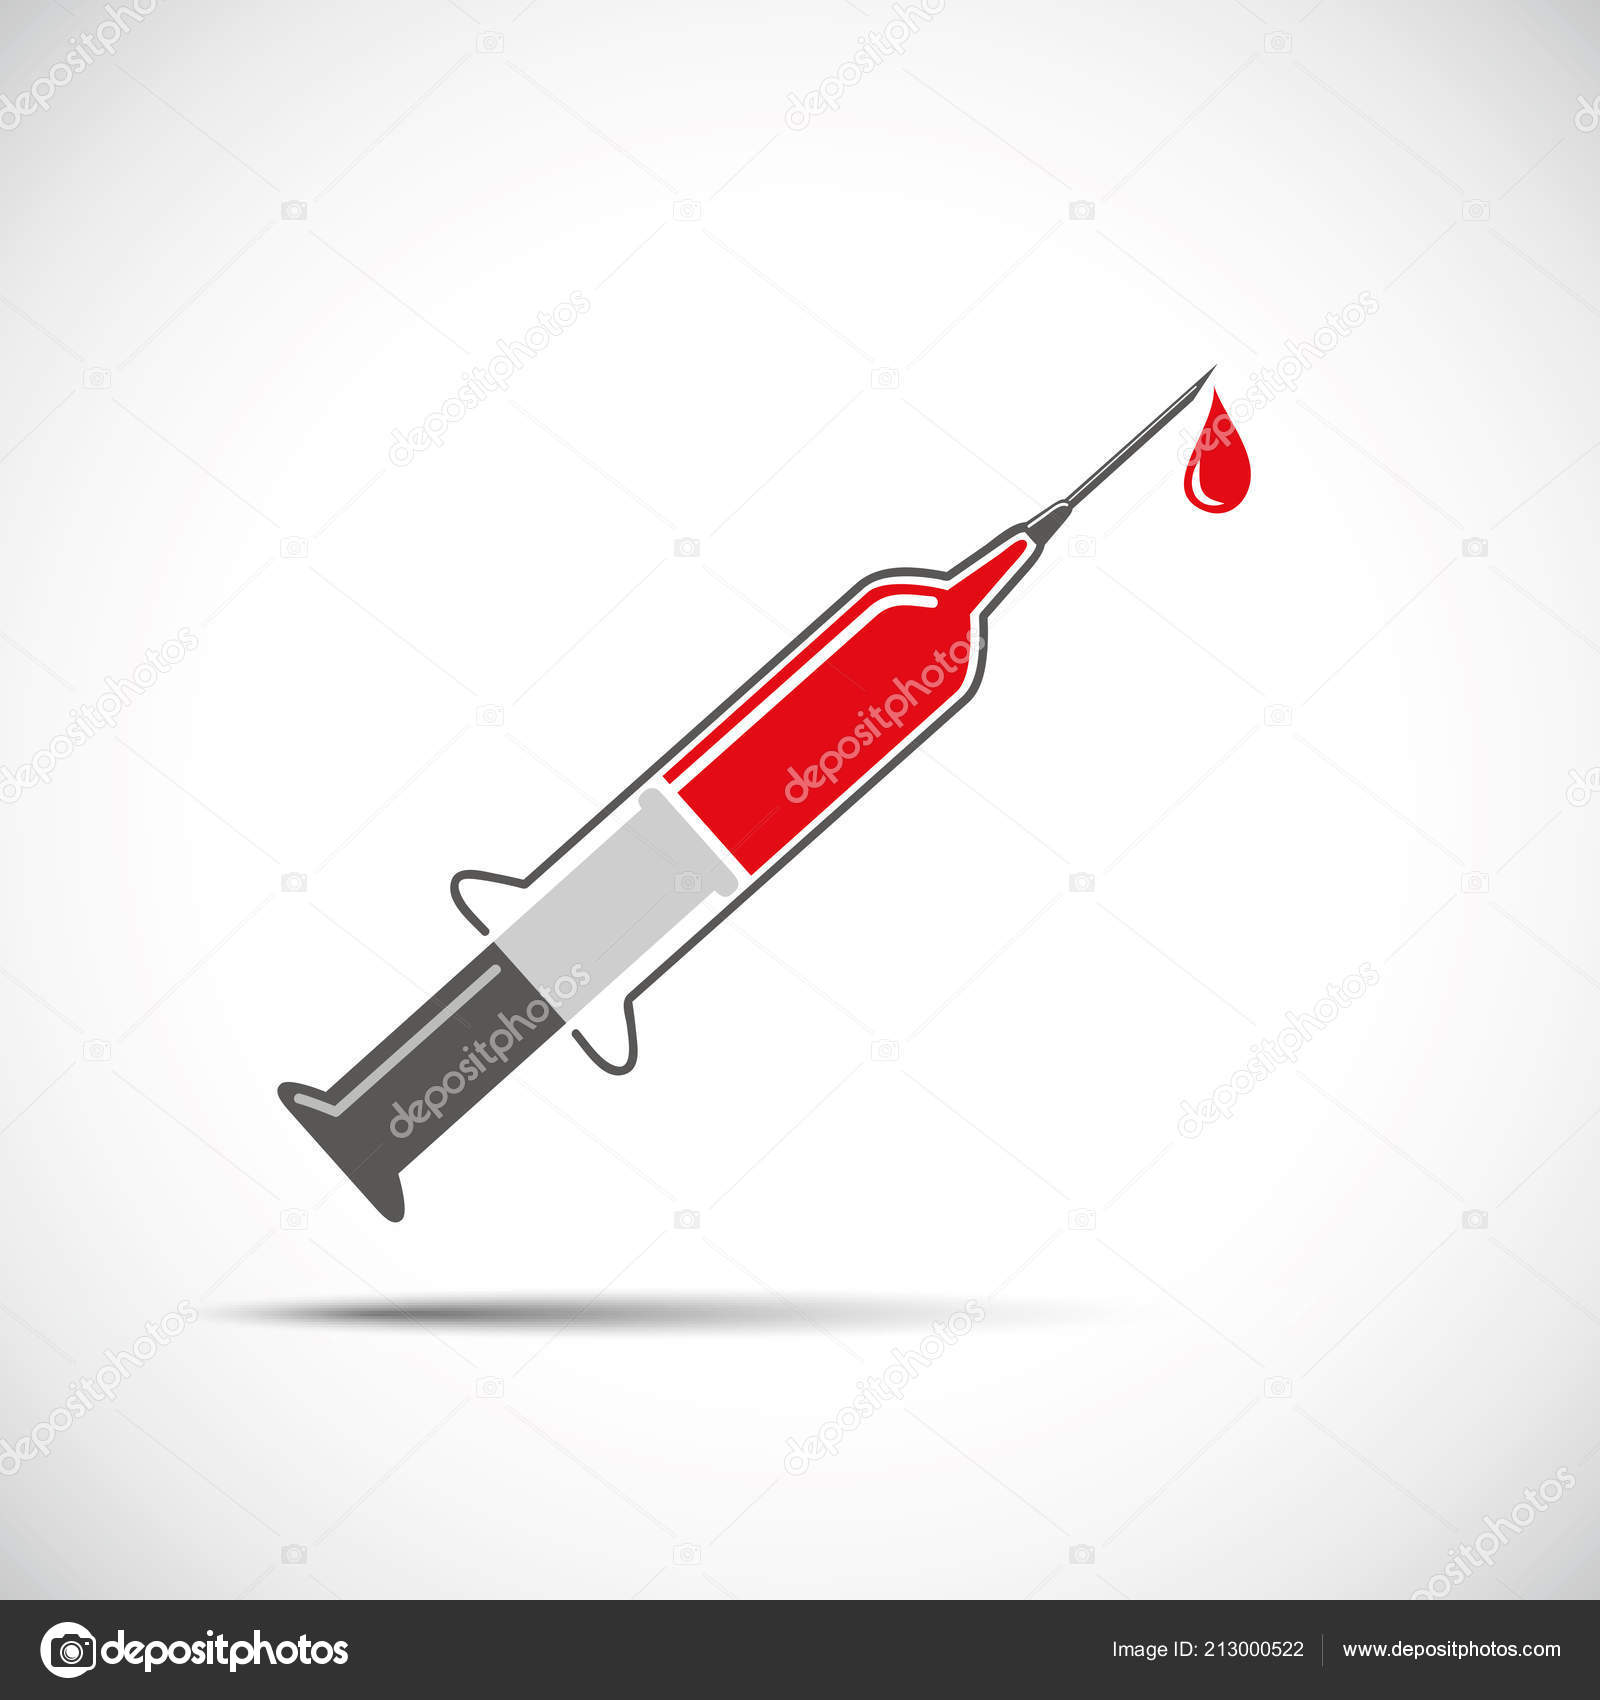 Шприц для инъекций и сдачи крови с помощью векторной иллюстрации иголки EPS...